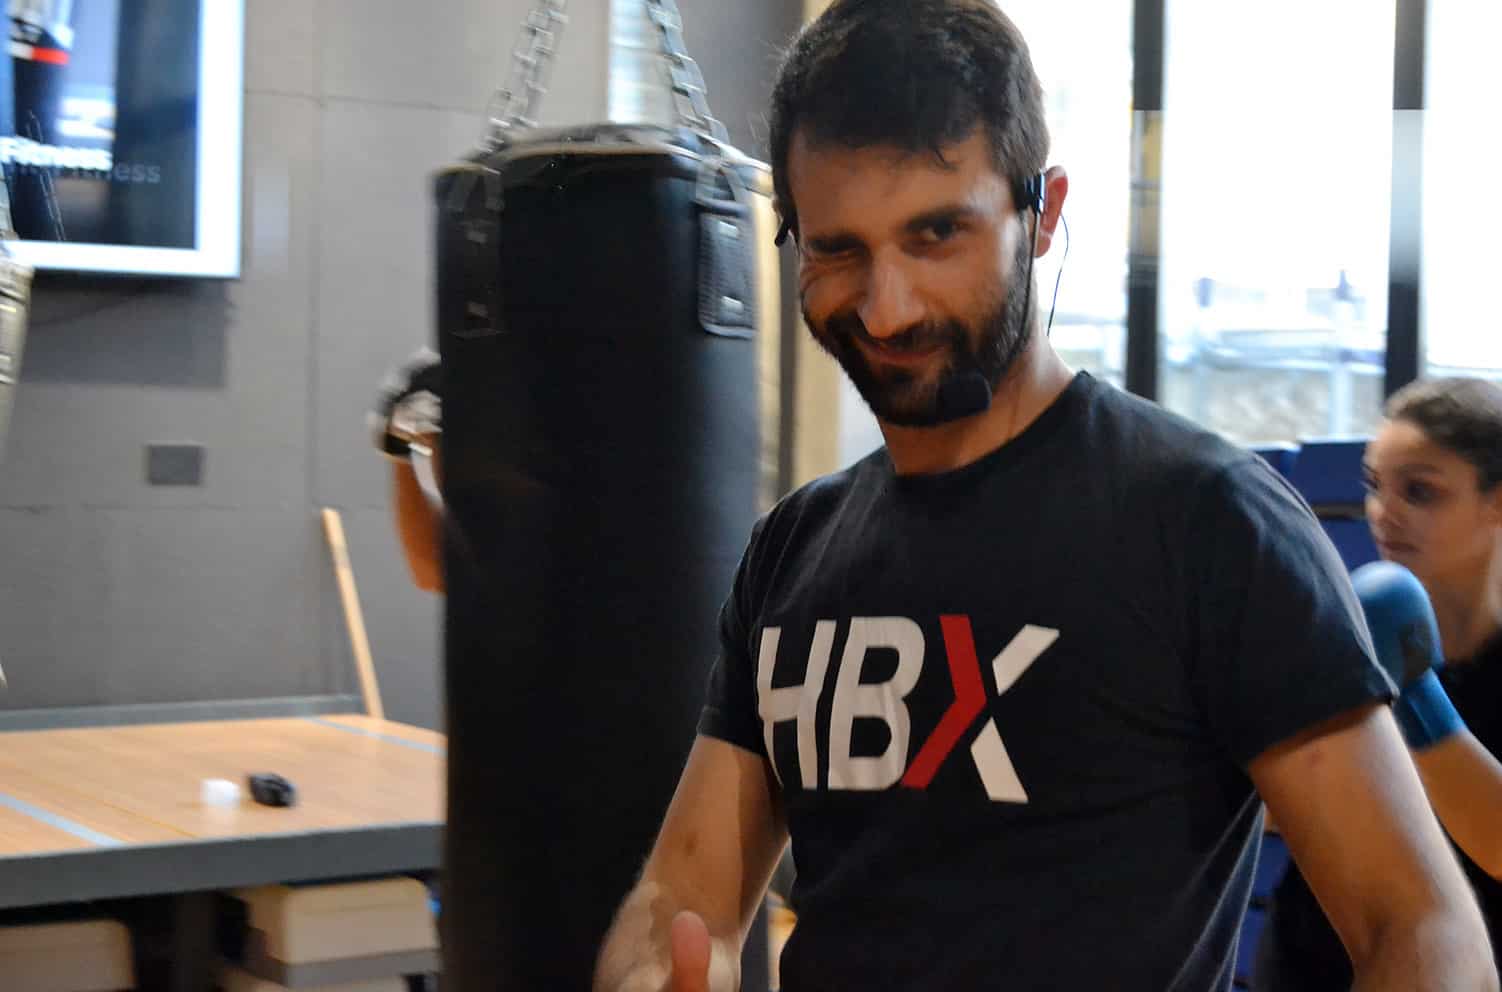 HBX Boxing Pomigliano